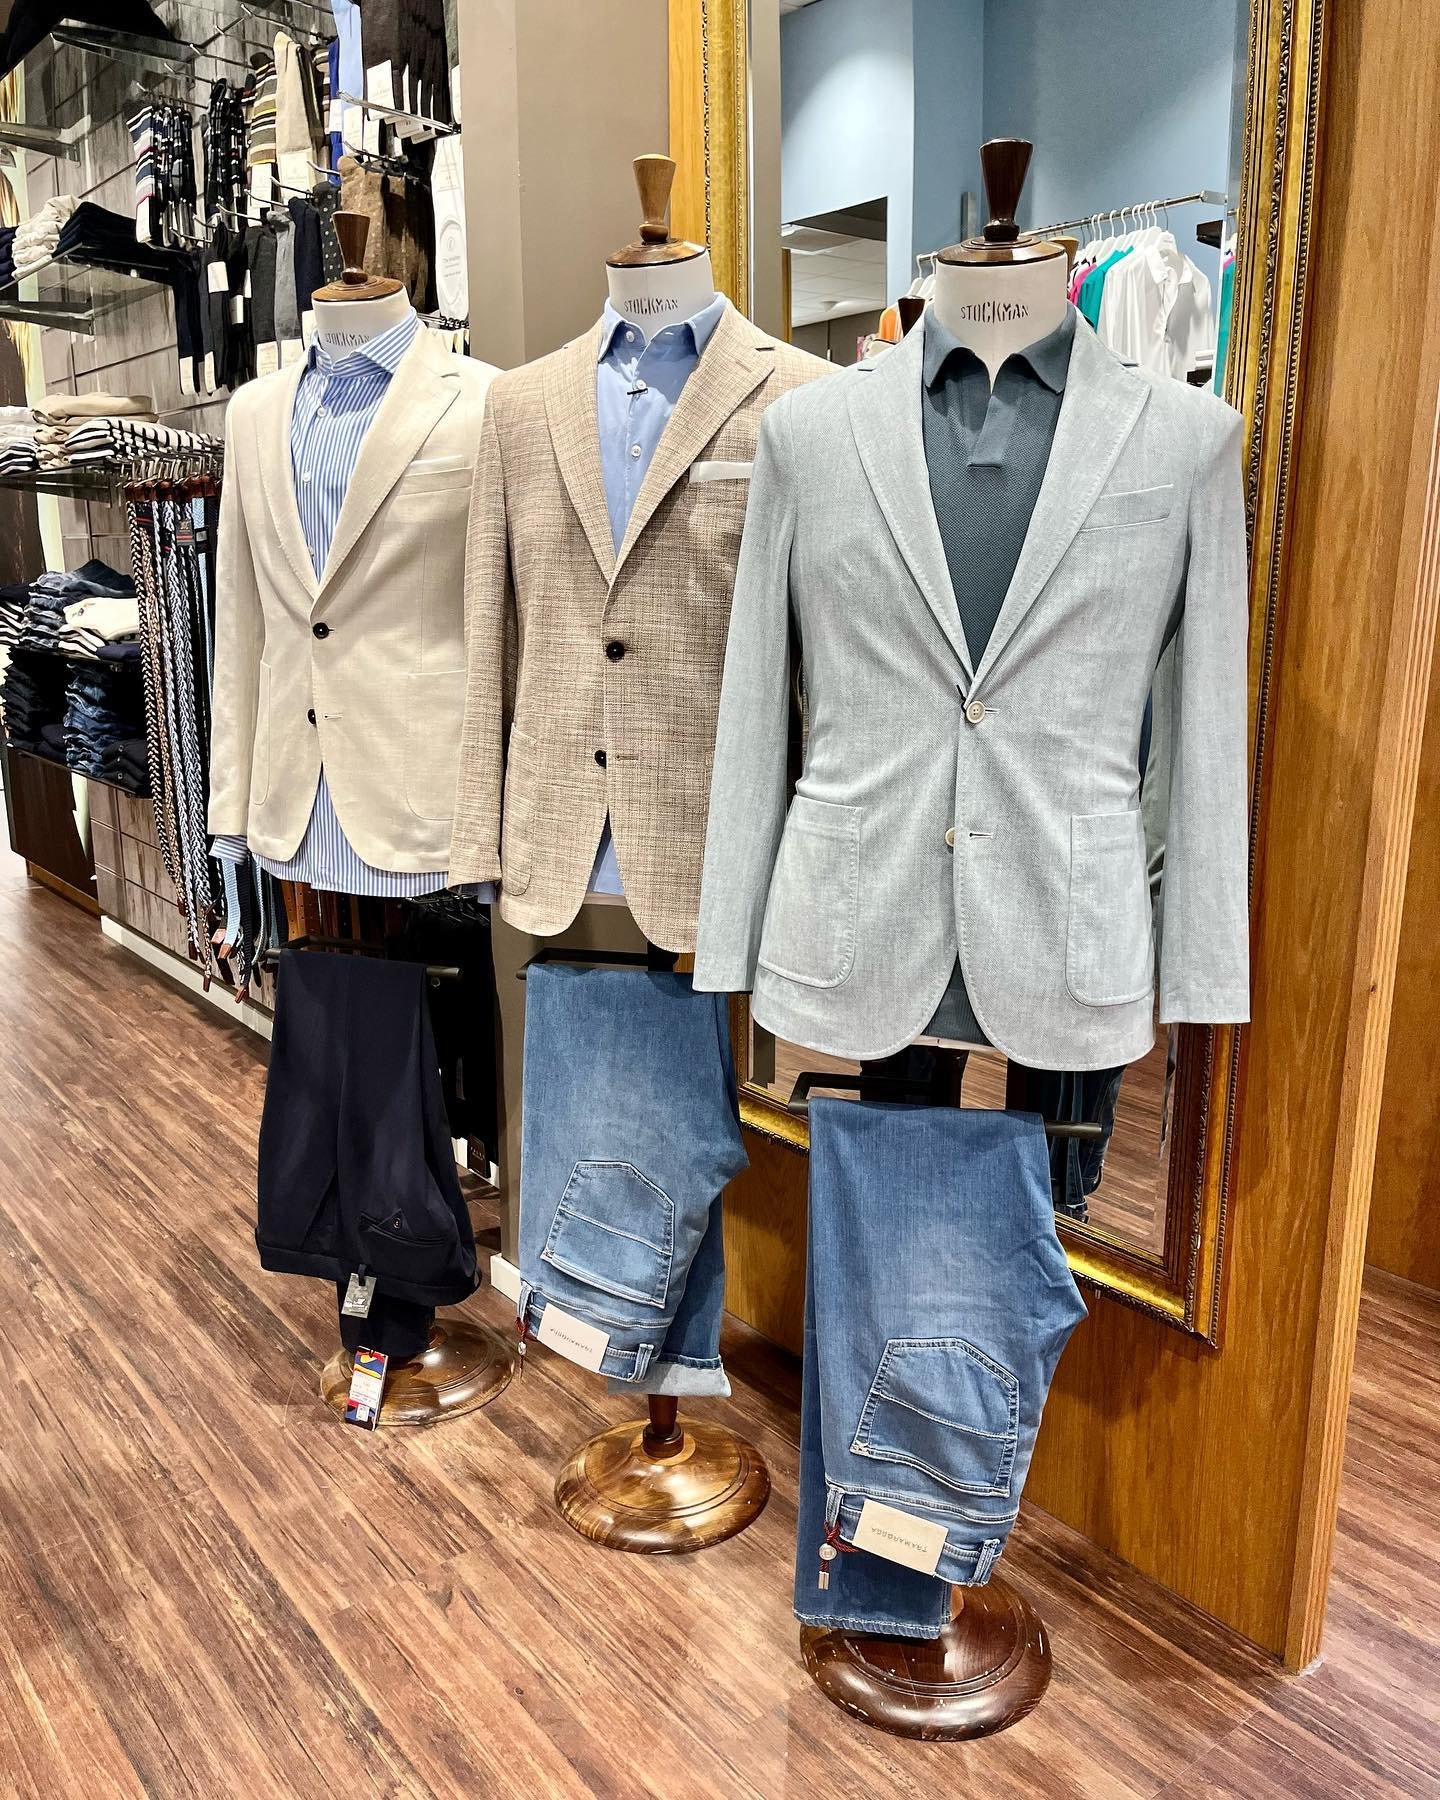 New Day, New Suit! Met een colbert kun je eindeloos combineren. Van polo tot shirt en pantalon tot jeans. 

#suitup #newcollection #brothersmode #zeist #newdaynewsuit #utrechtseheuvelrug #ss24 #asuitisyourbestcompanion #herenmode